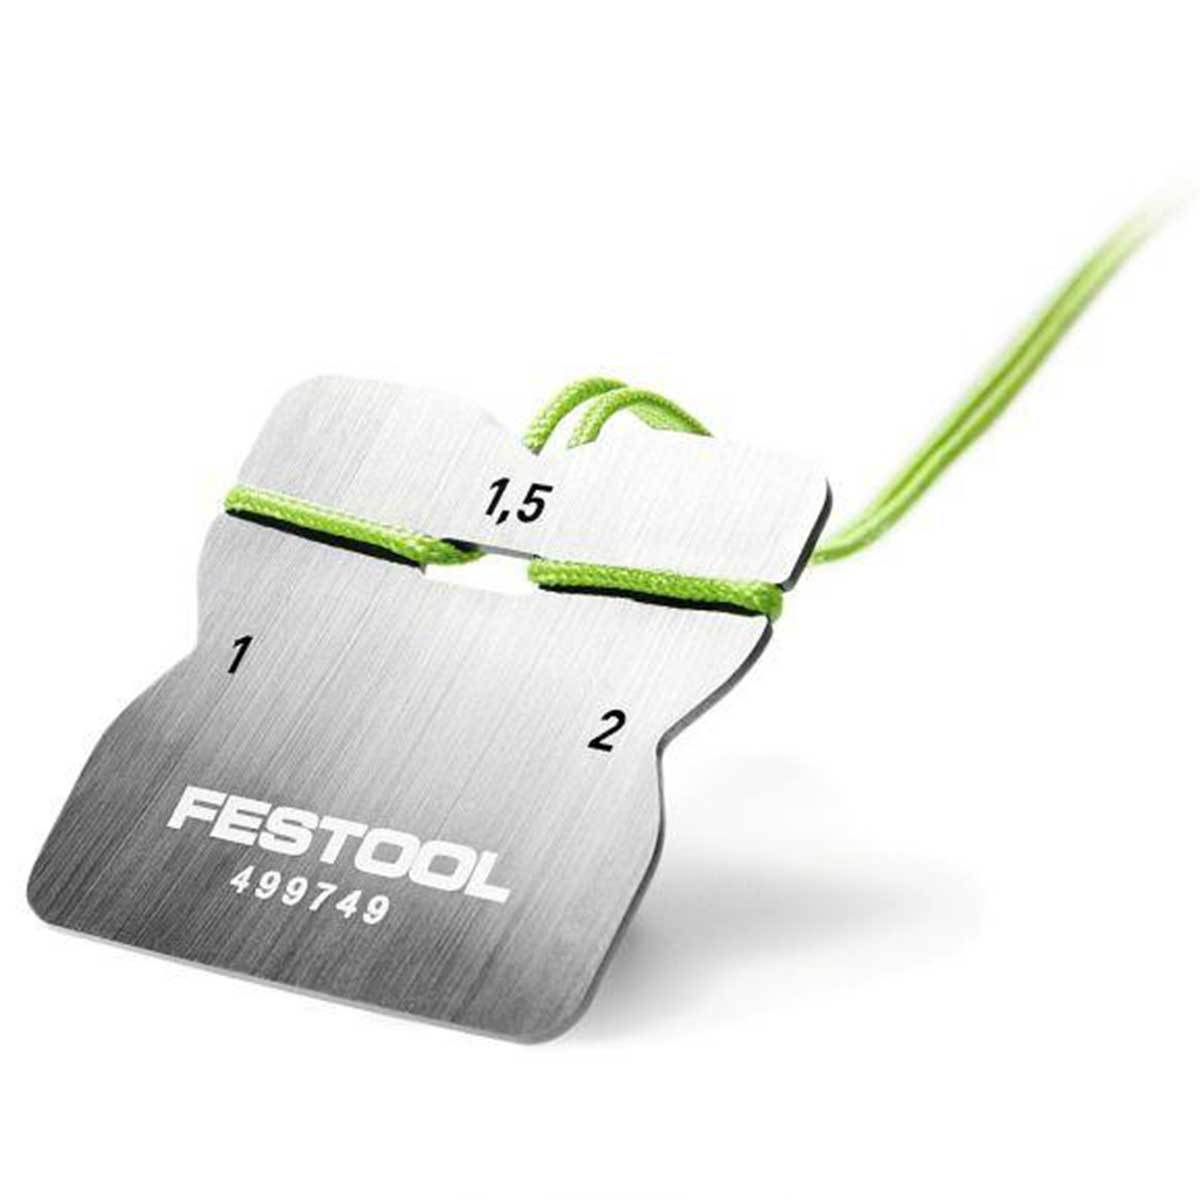 Festool Carbide Scraper for Edge Banding for KA 65 499749